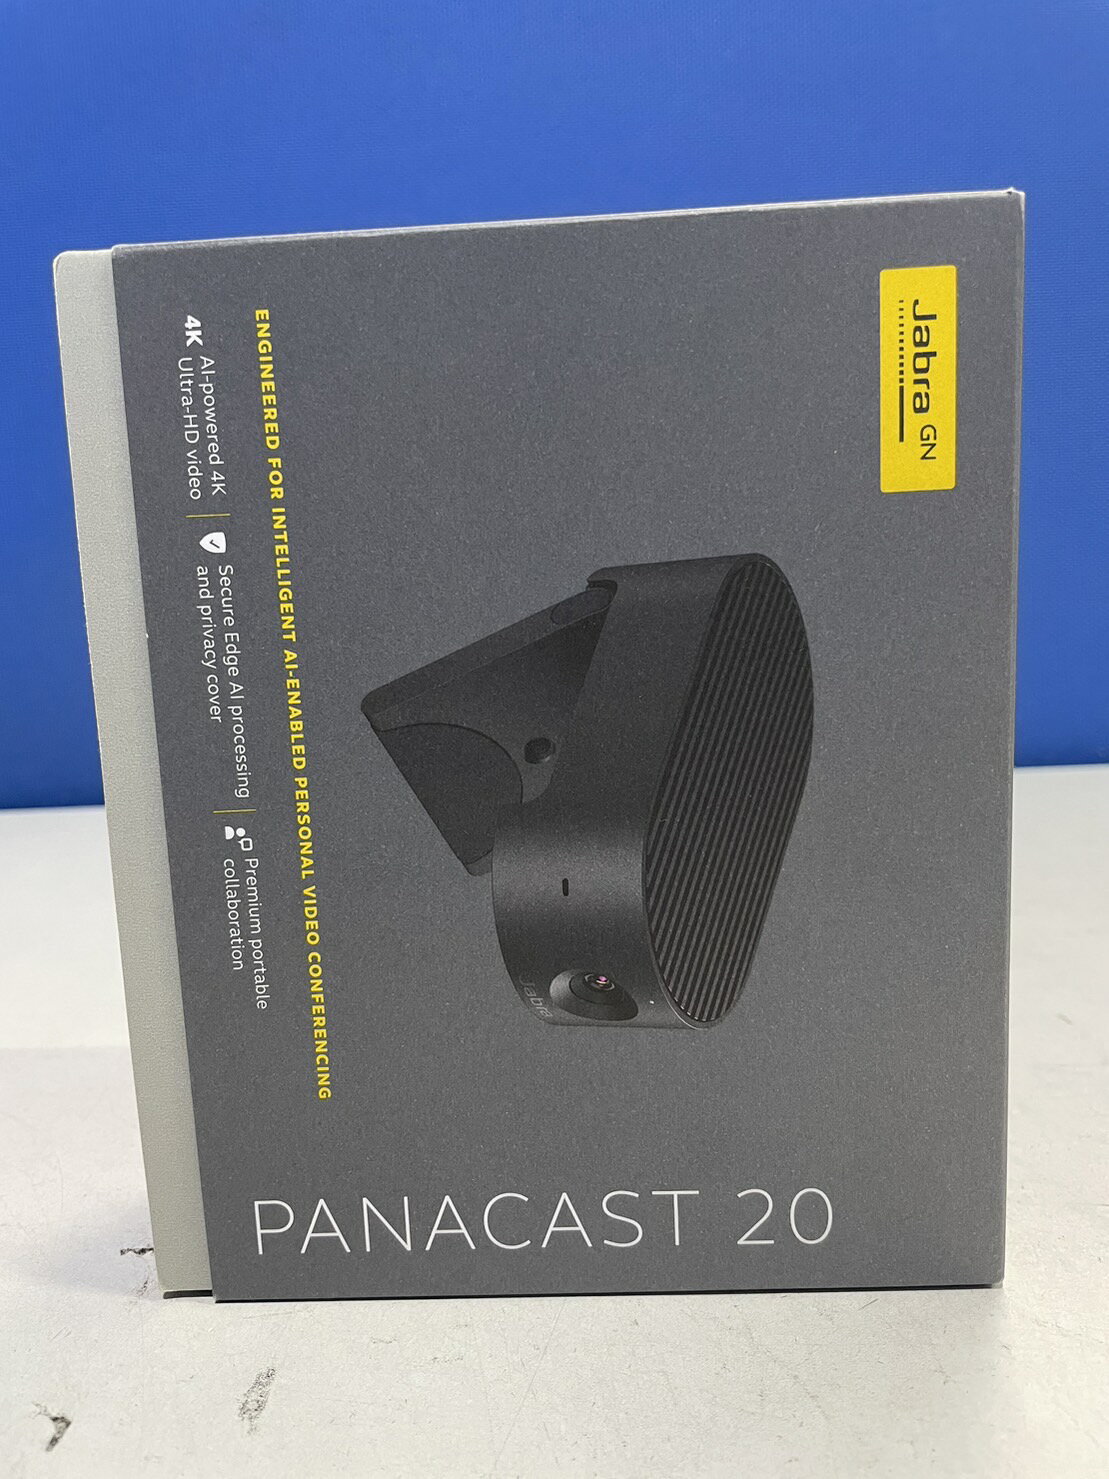 PanaCast 20 ブラック Jabra 8300-119 ウェブカメラ